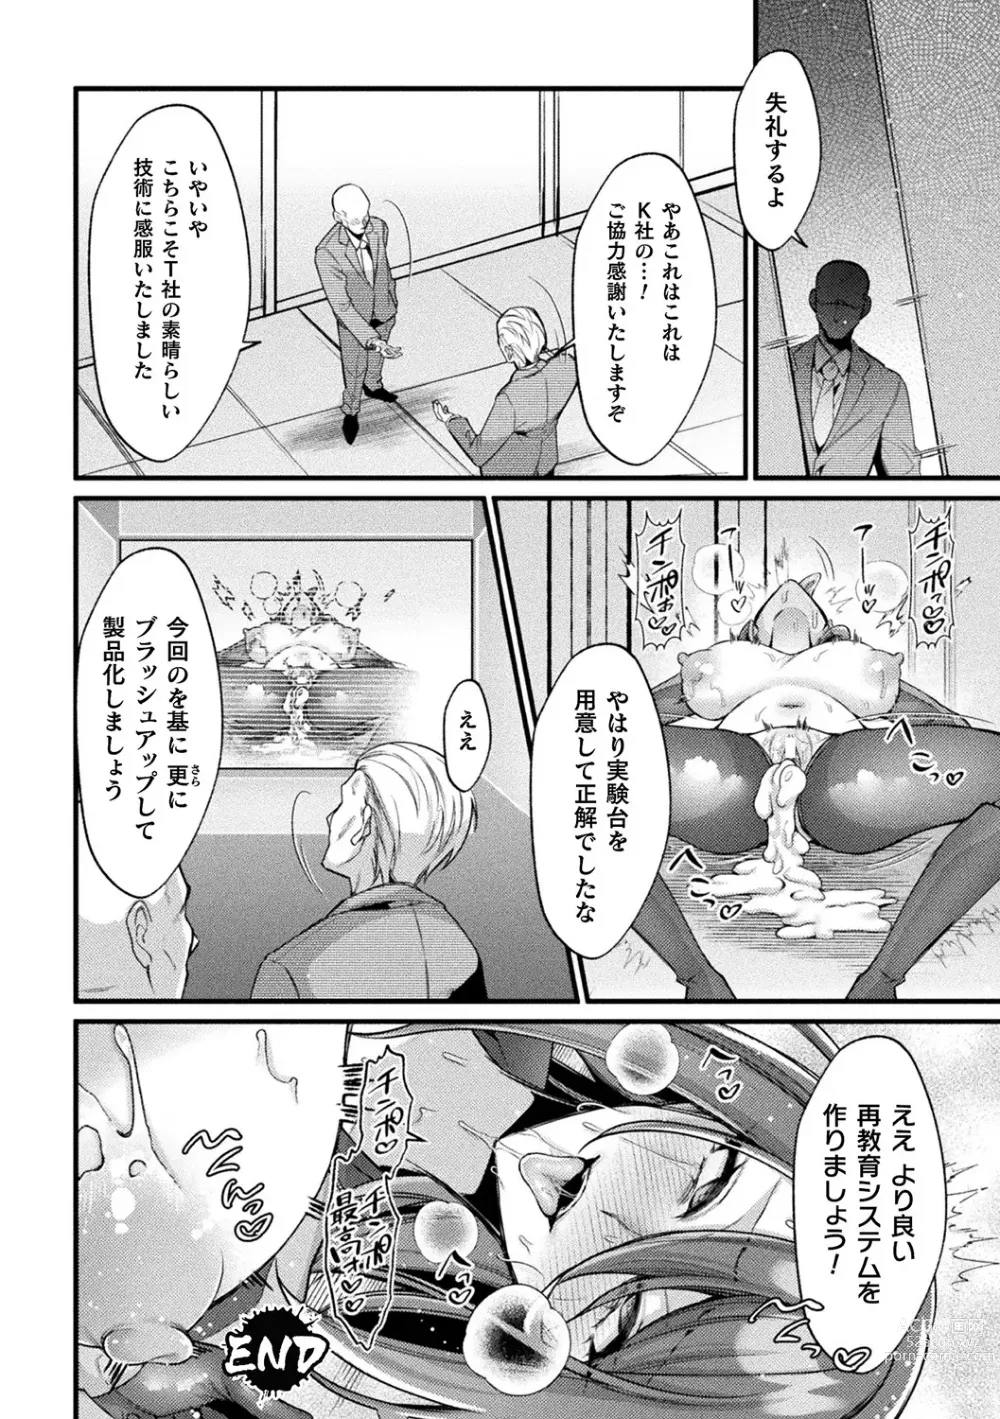 Page 24 of manga Bessatsu Comic Unreal AI ni Wakaraserareru Jinrui Hen Vol. 1